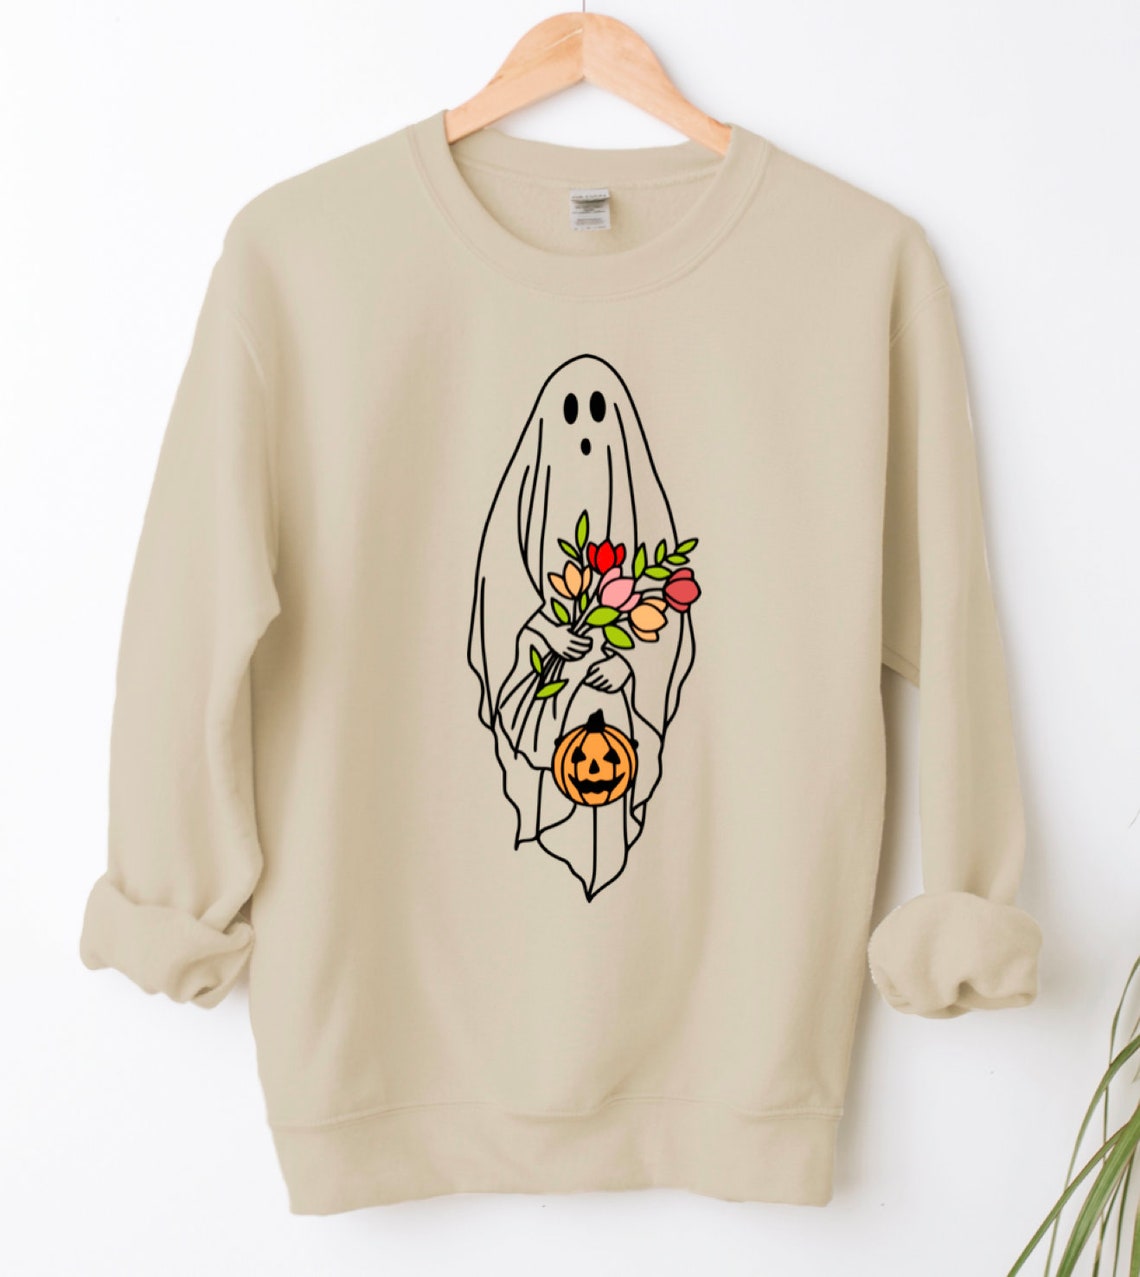 Halloween Ghost Shirt, Halloween Party Shirt, Floral Ghost Shirt, Autumn Shirt, Trick or Treat Shirt, Cute Ghost, Halloween Pumpkin Gift